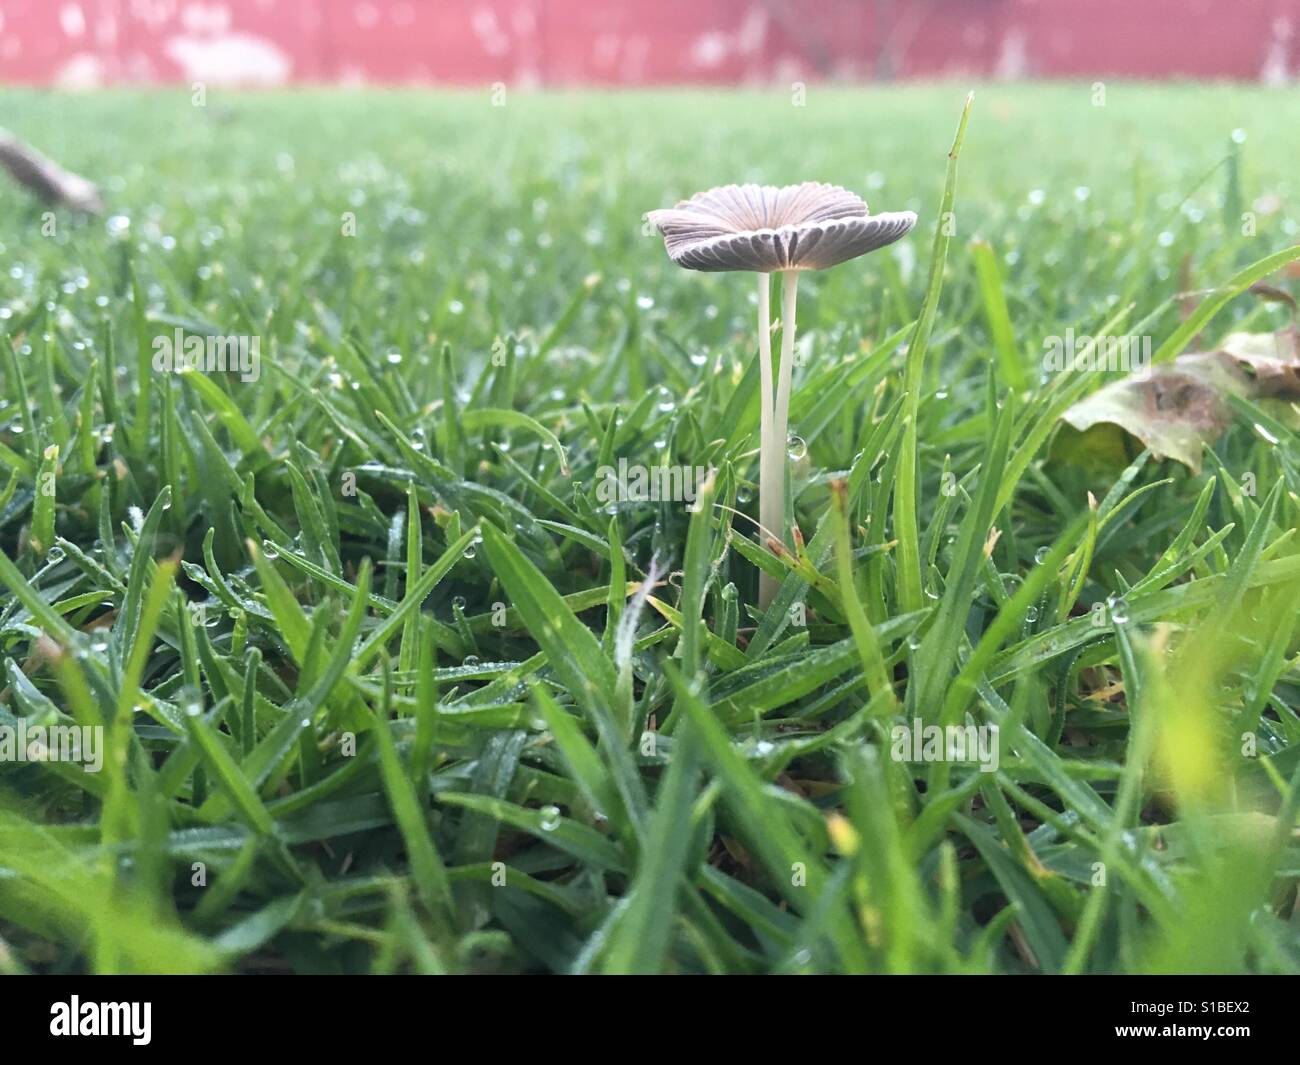 Tiny mushroom after rain Stock Photo